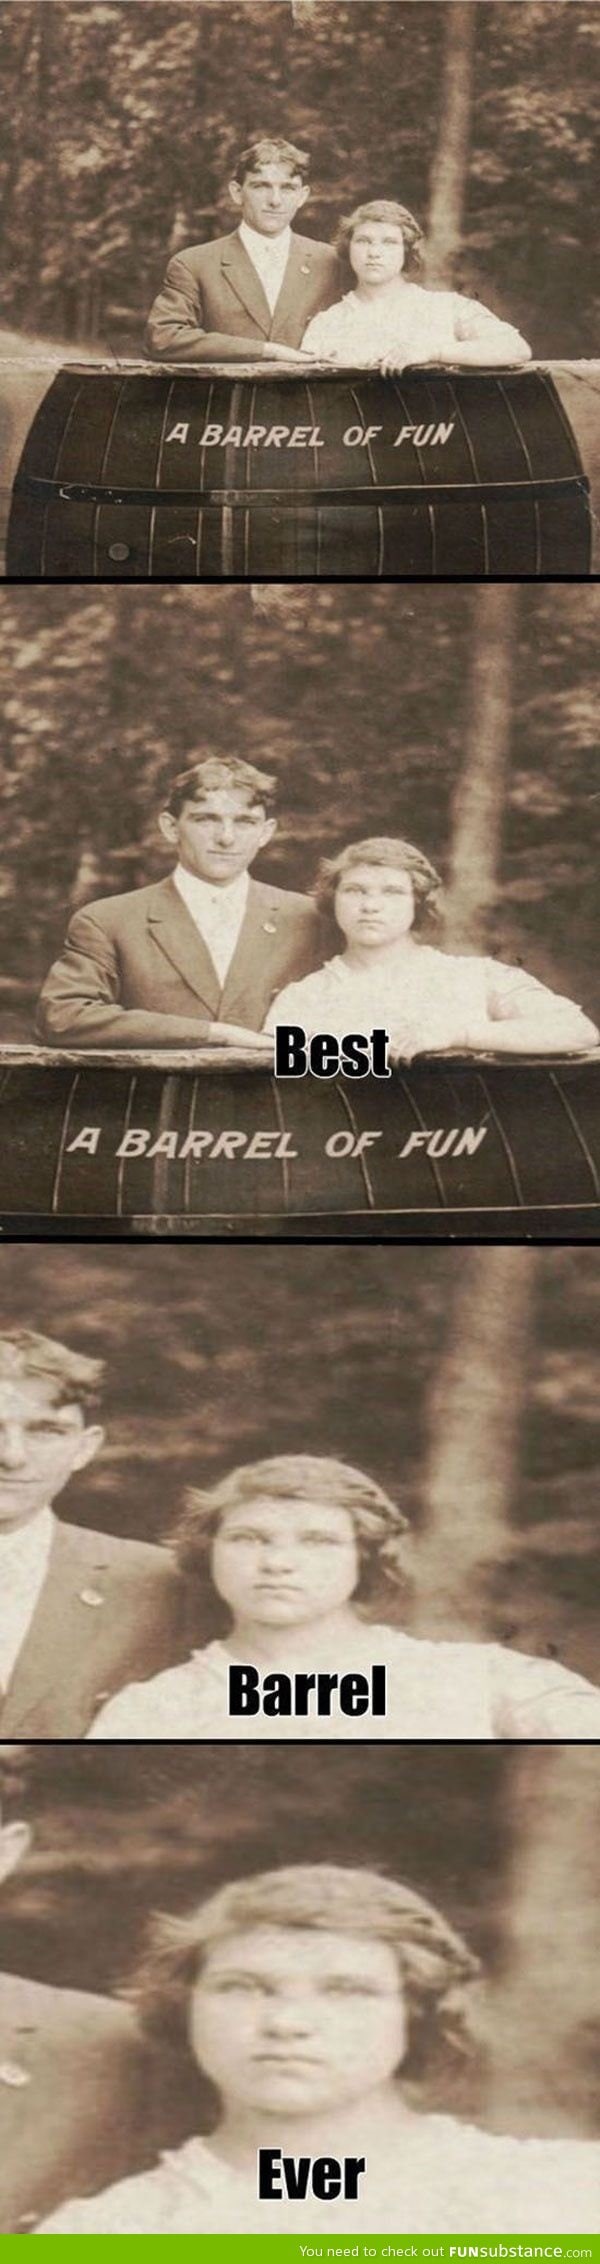 Barrel of fun